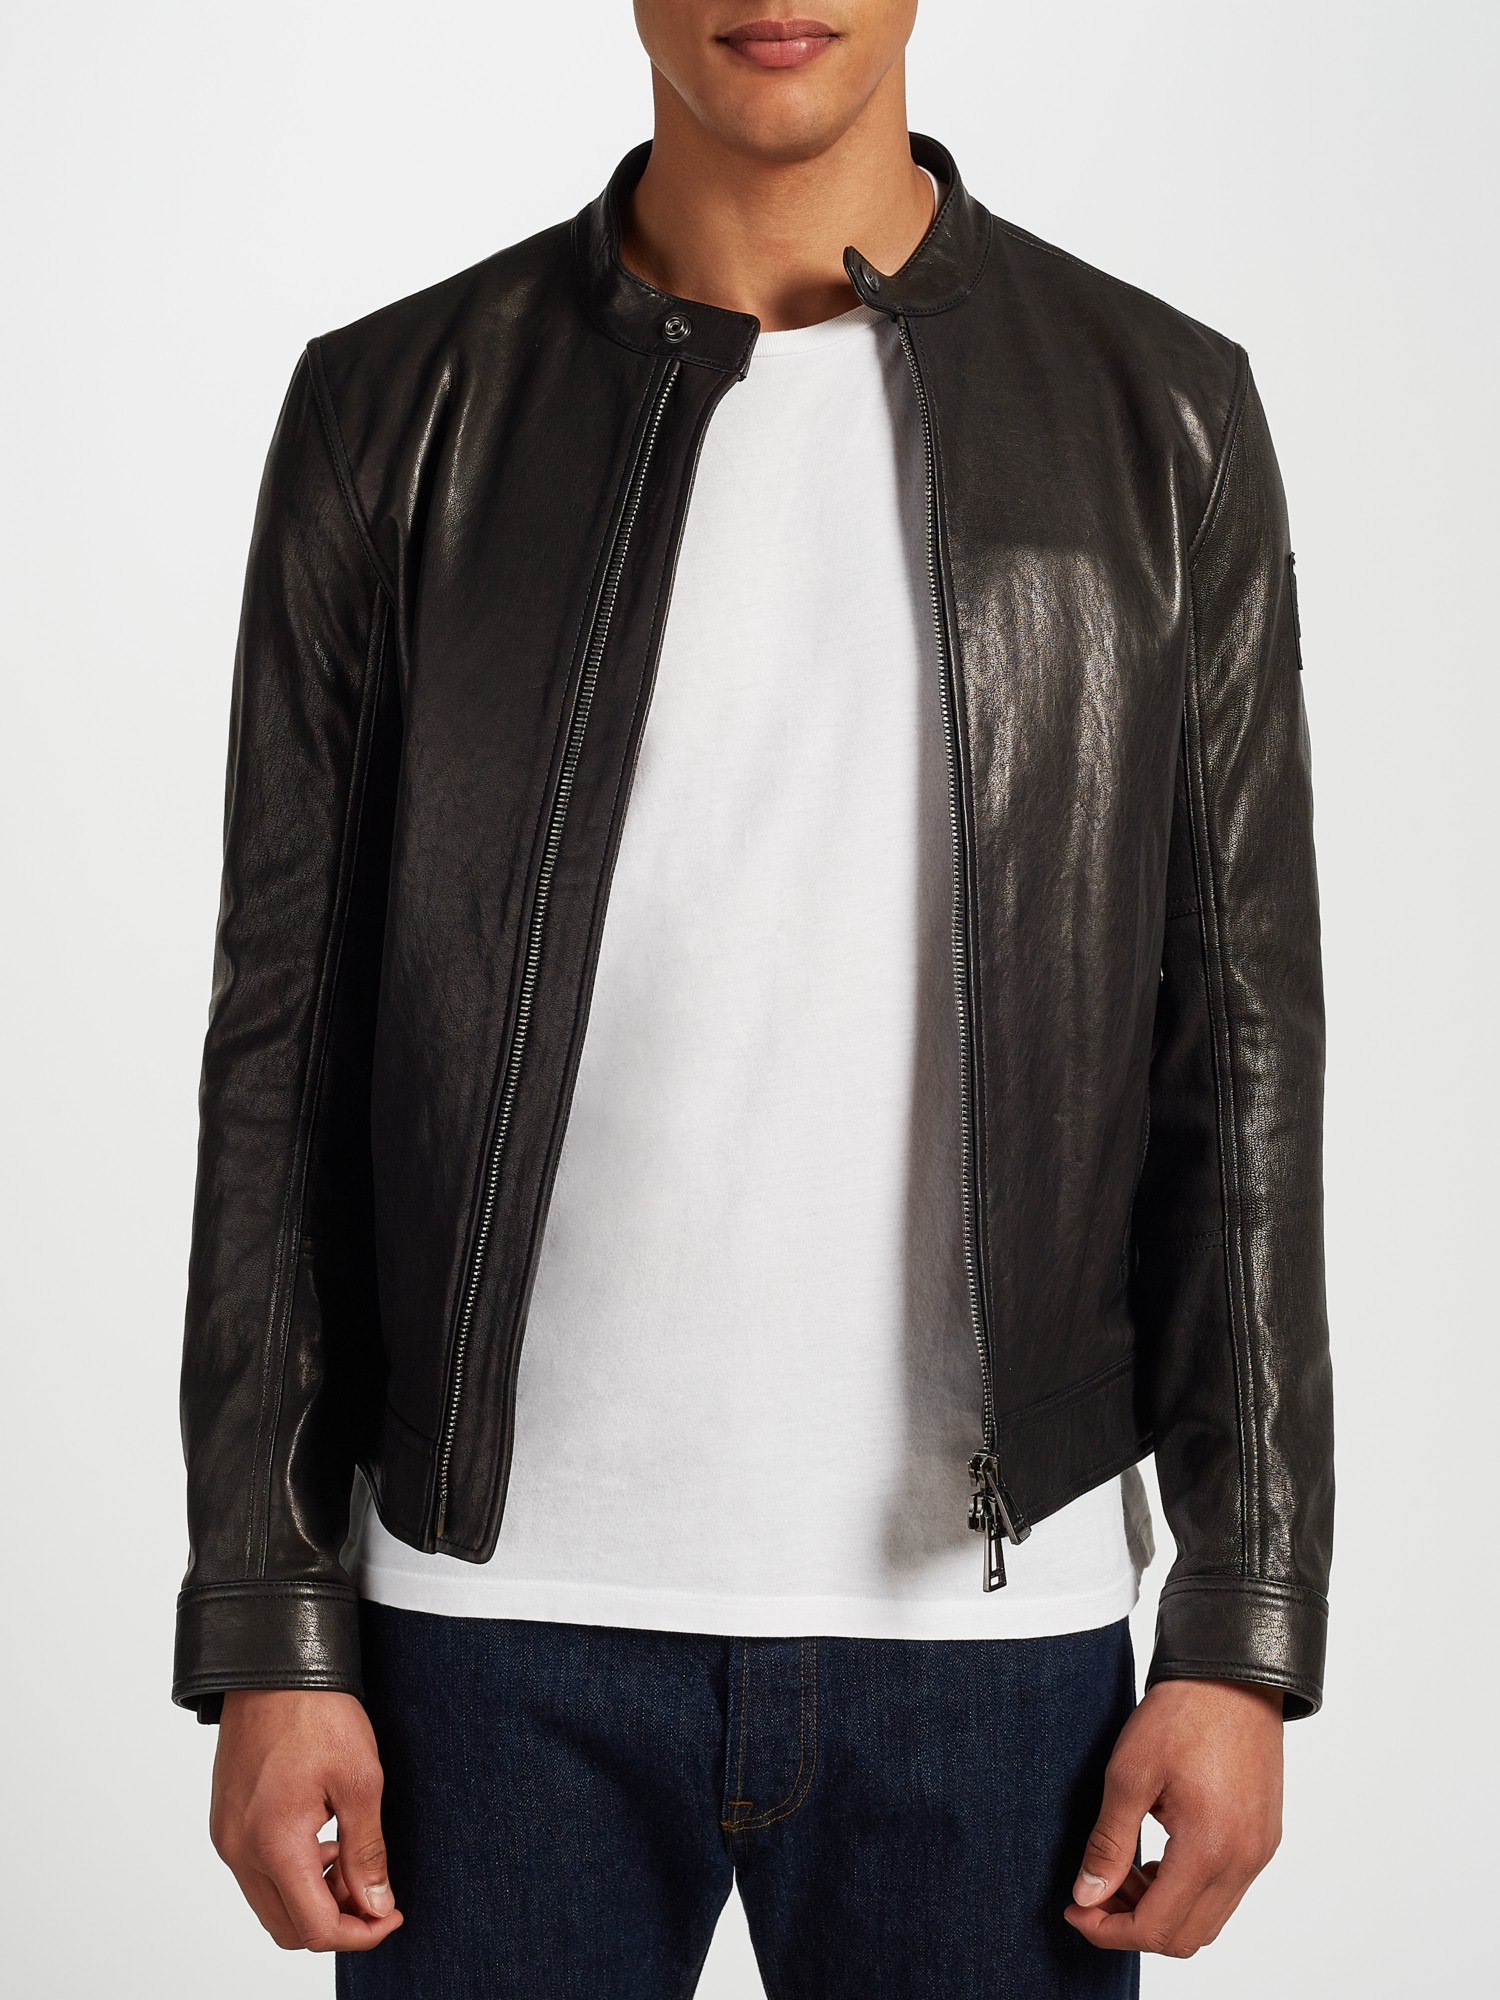 Belstaff Gransden Leather Blouson Jacket in Black for Men - Lyst